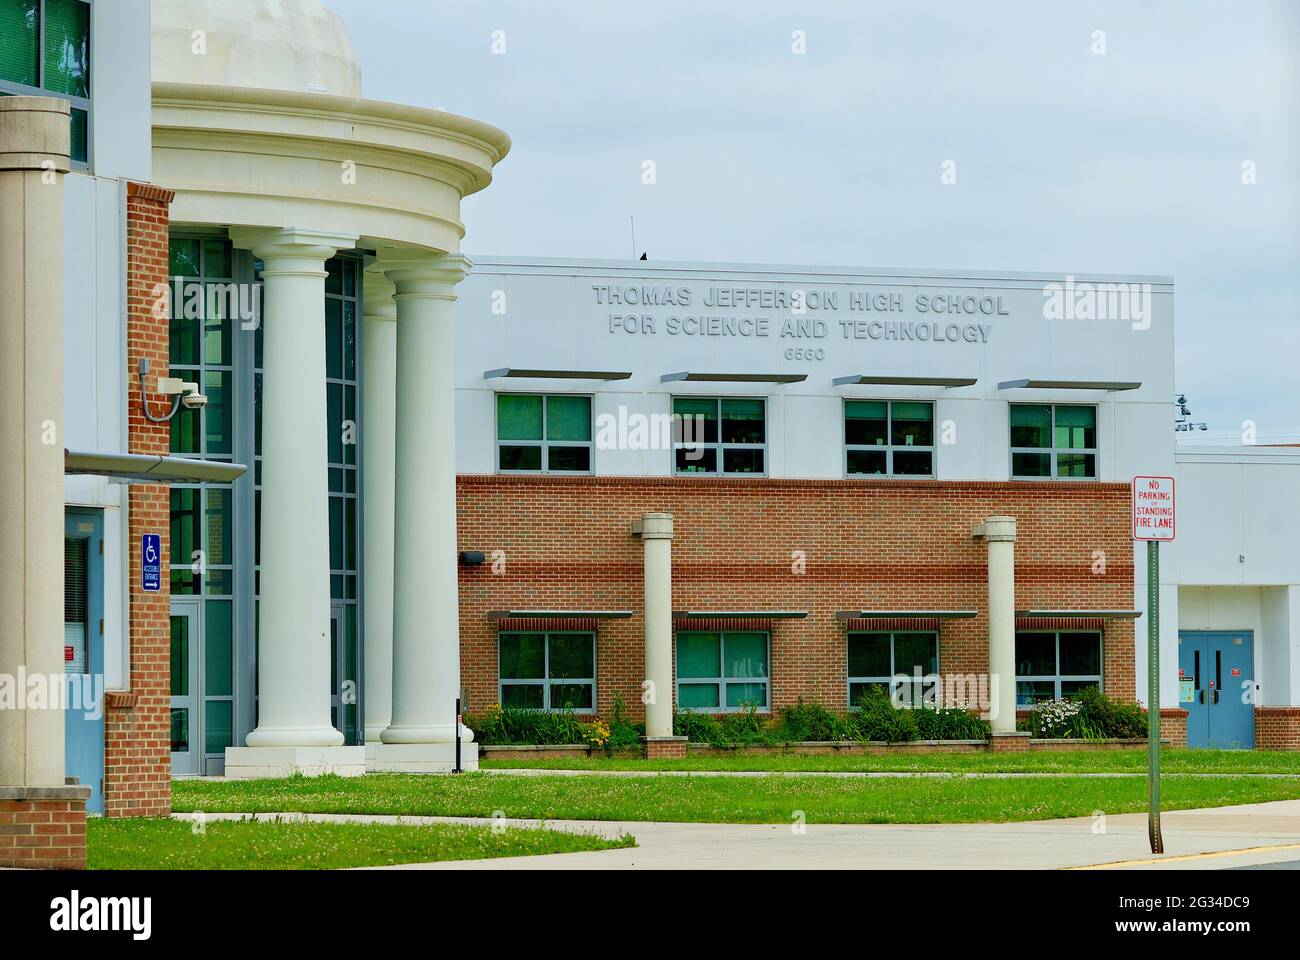 Thomas Jefferson High School for Science and Technology est le premier lycée public des États-Unis situé dans le comté de Fairfax, en Virginie. Banque D'Images